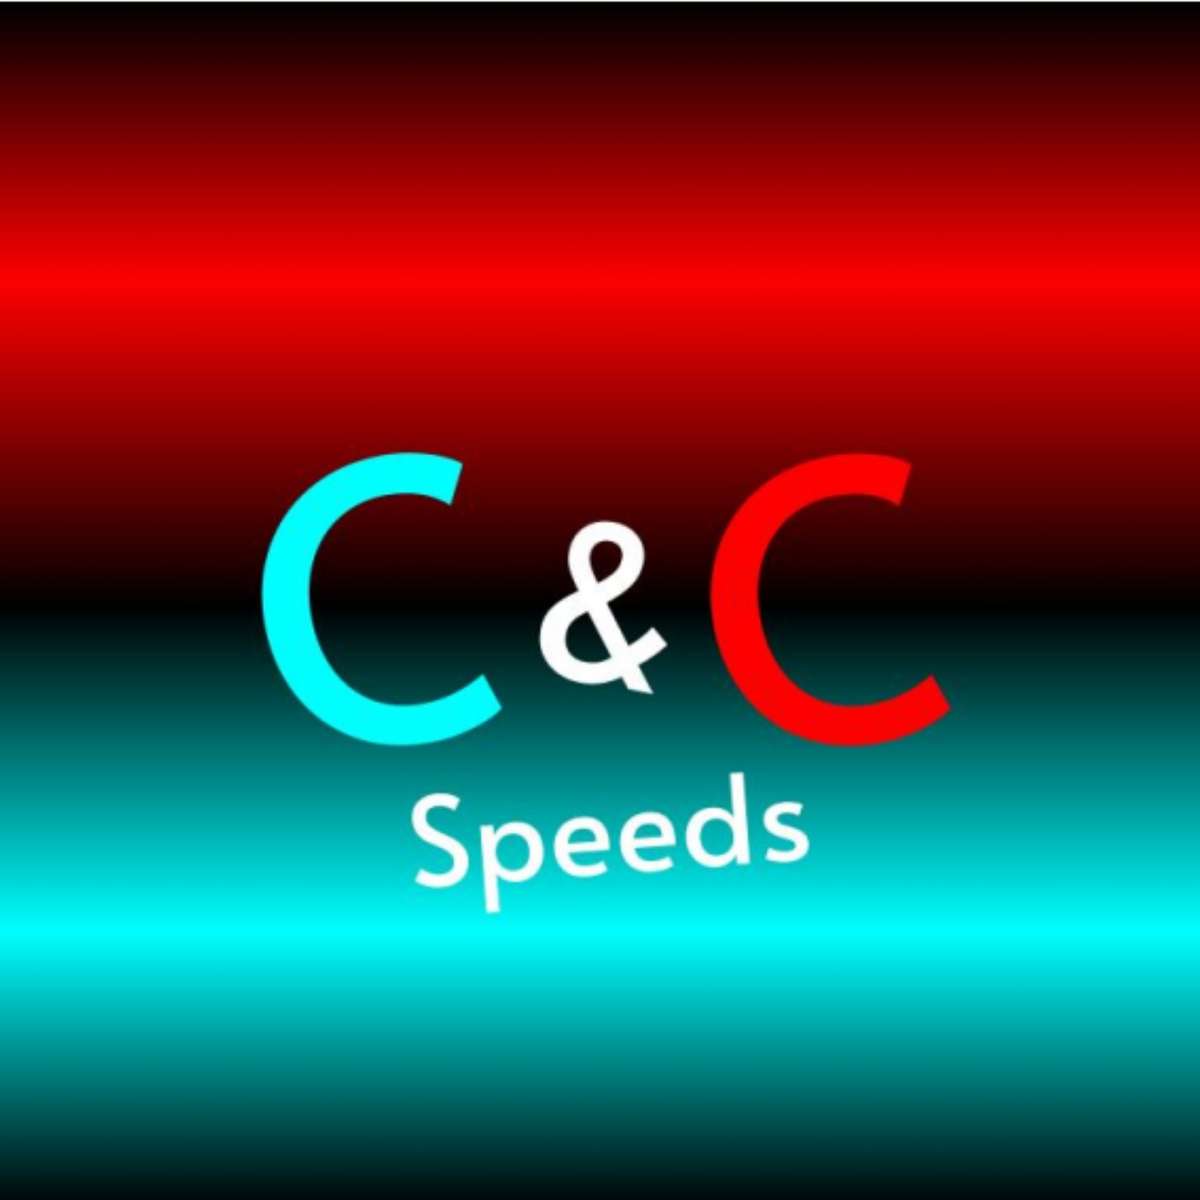 Velocità C&C puzzle online